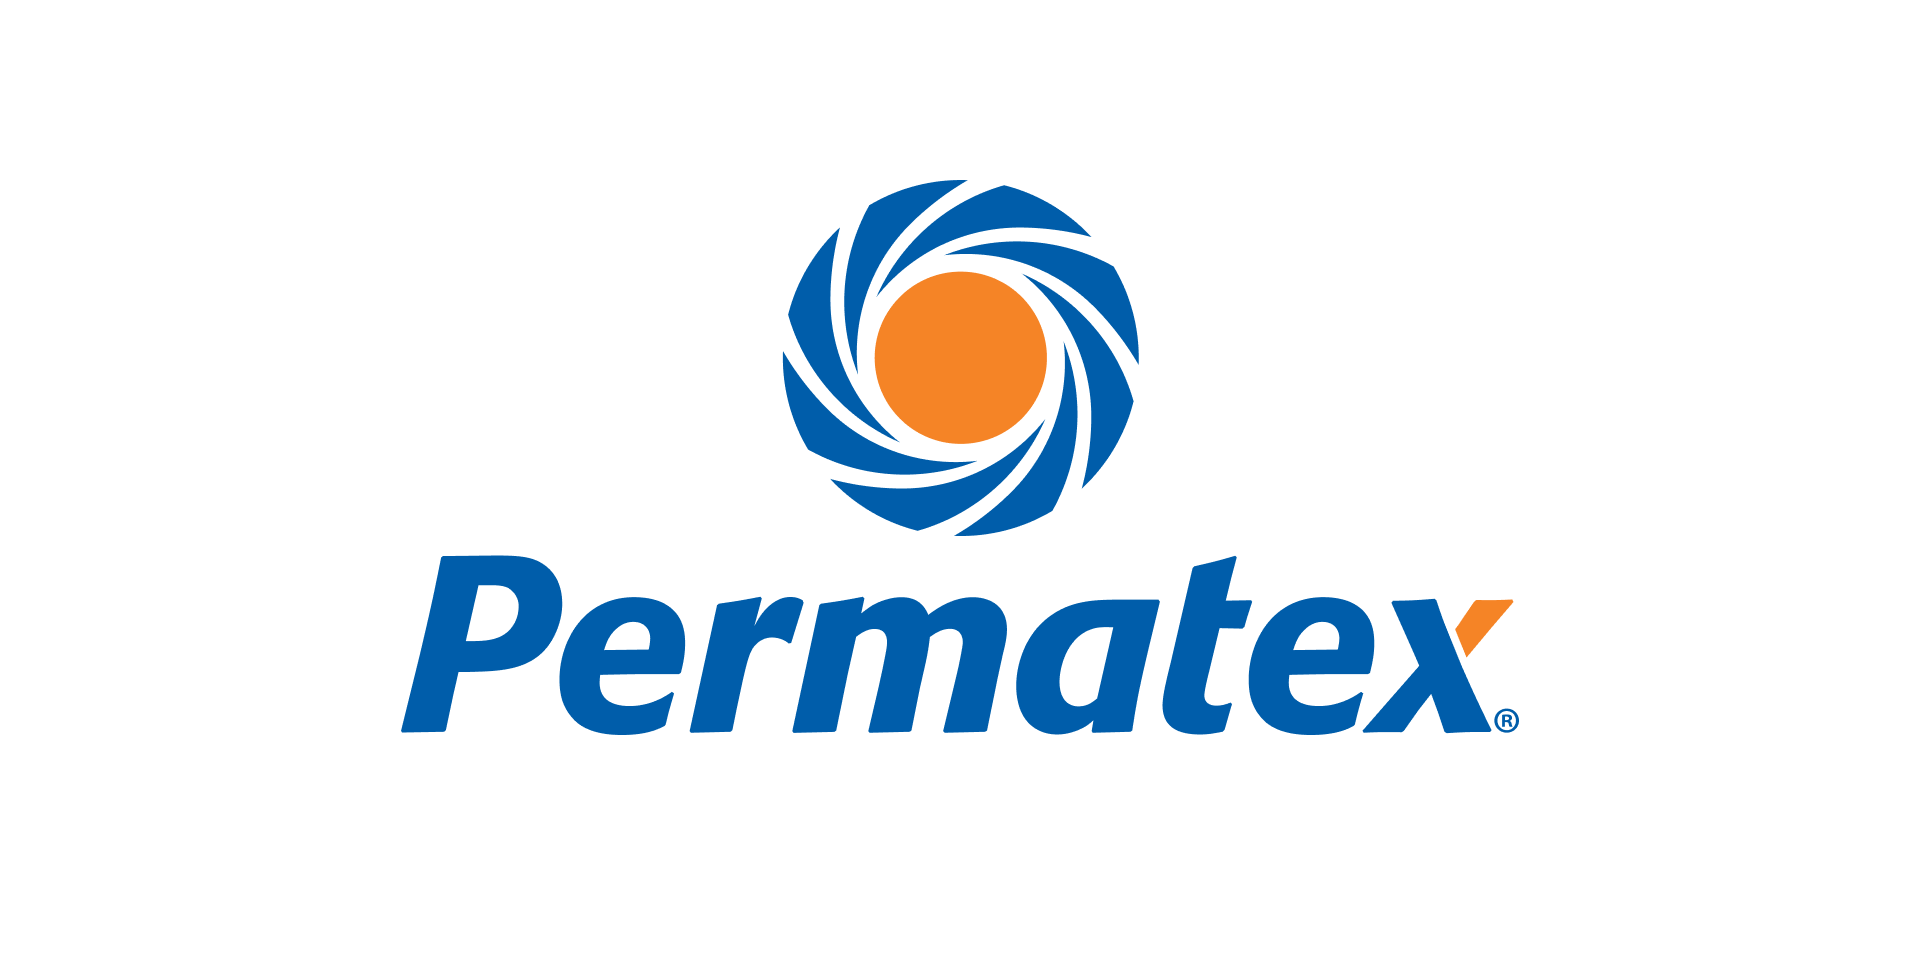 www.permatex.com